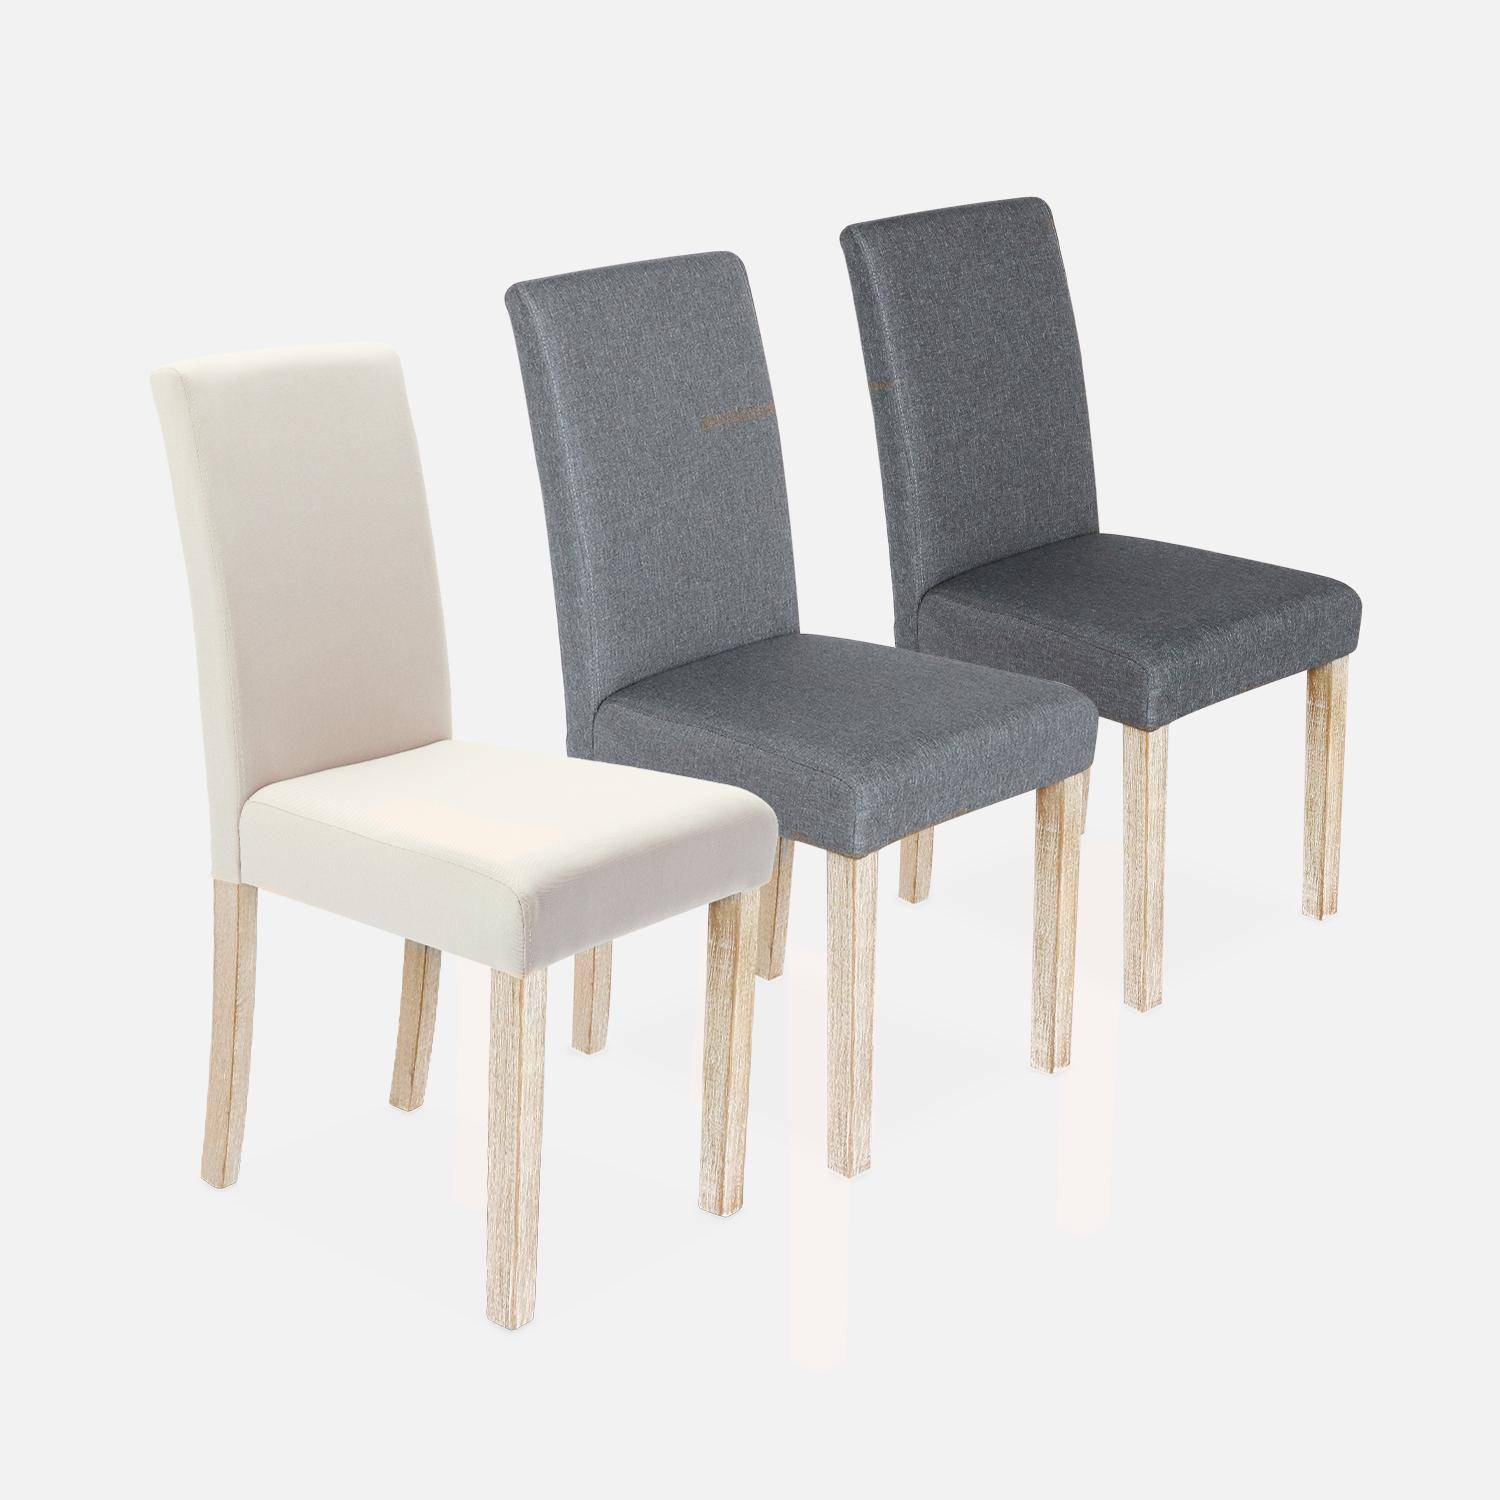 Lote de 4 sillas - Rita - sillas de tela, patas madera lacada ,sweeek,Photo6